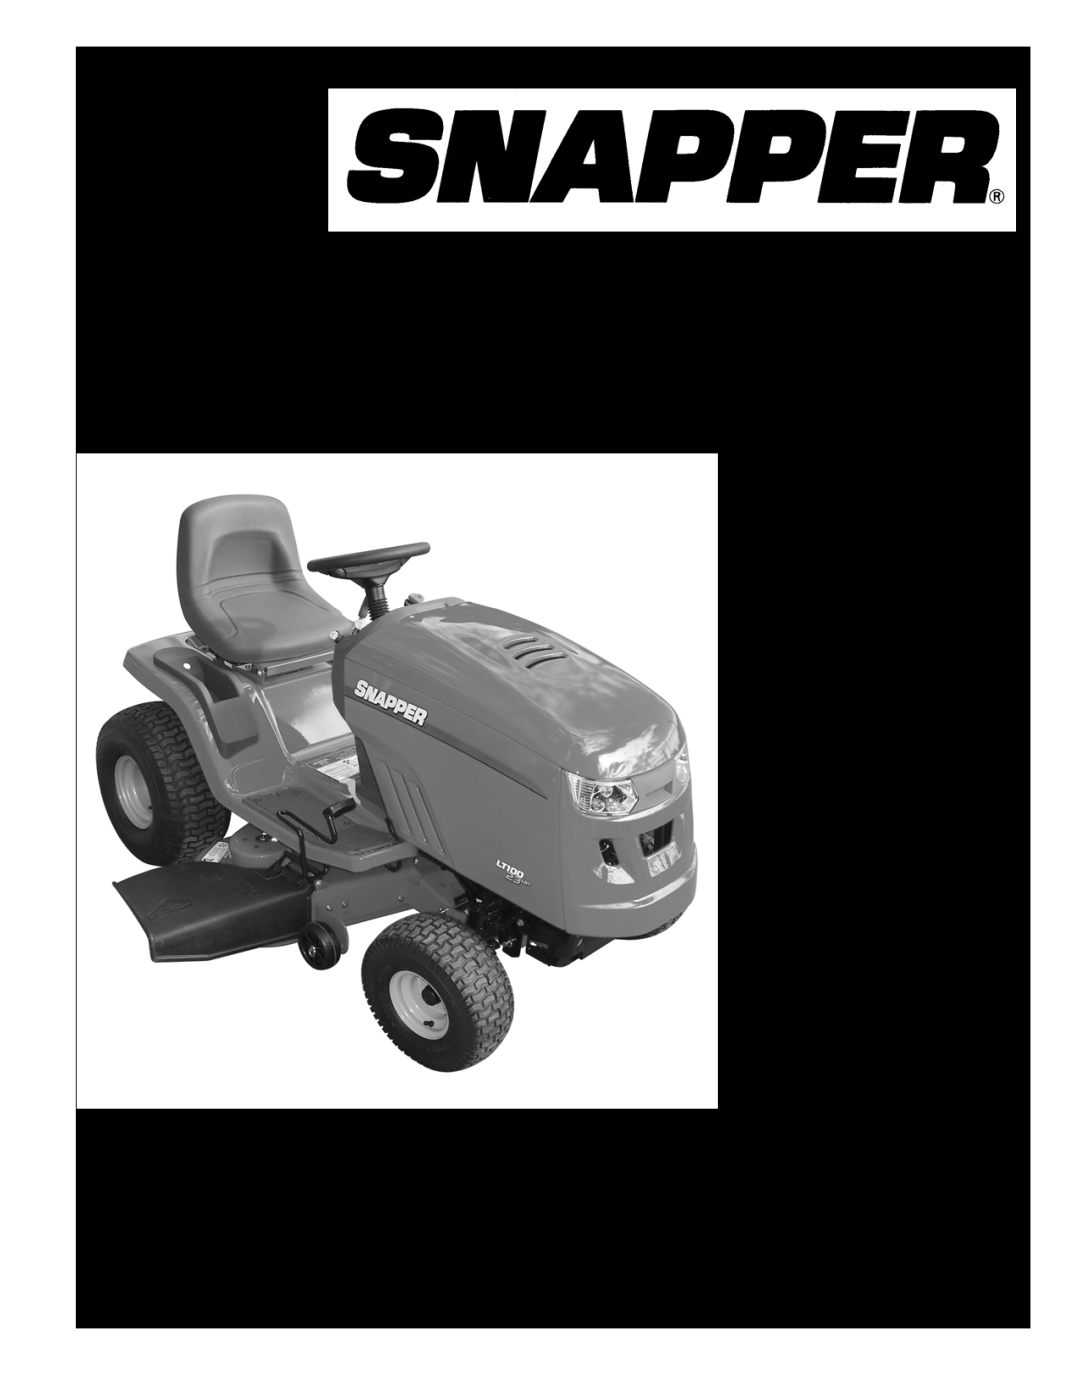 Snapper 7800545E, 7800542 manual Parts Manual for, Model No. Description, Reproduction, Manual No, Revision: B, 10/19/2010 